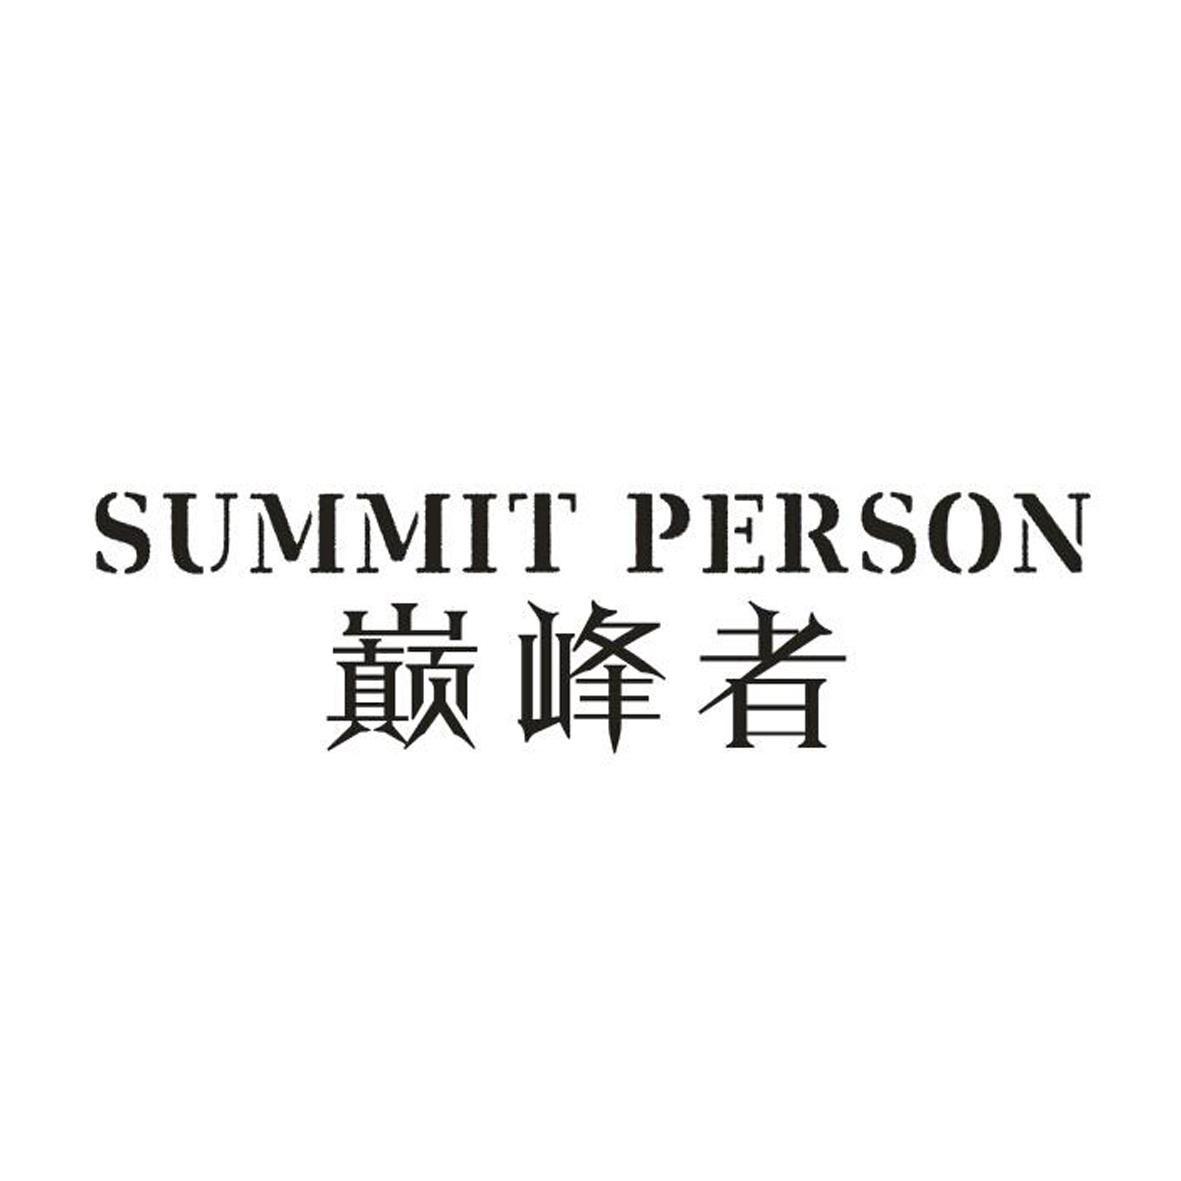 巅峰者 summit person 商标公告